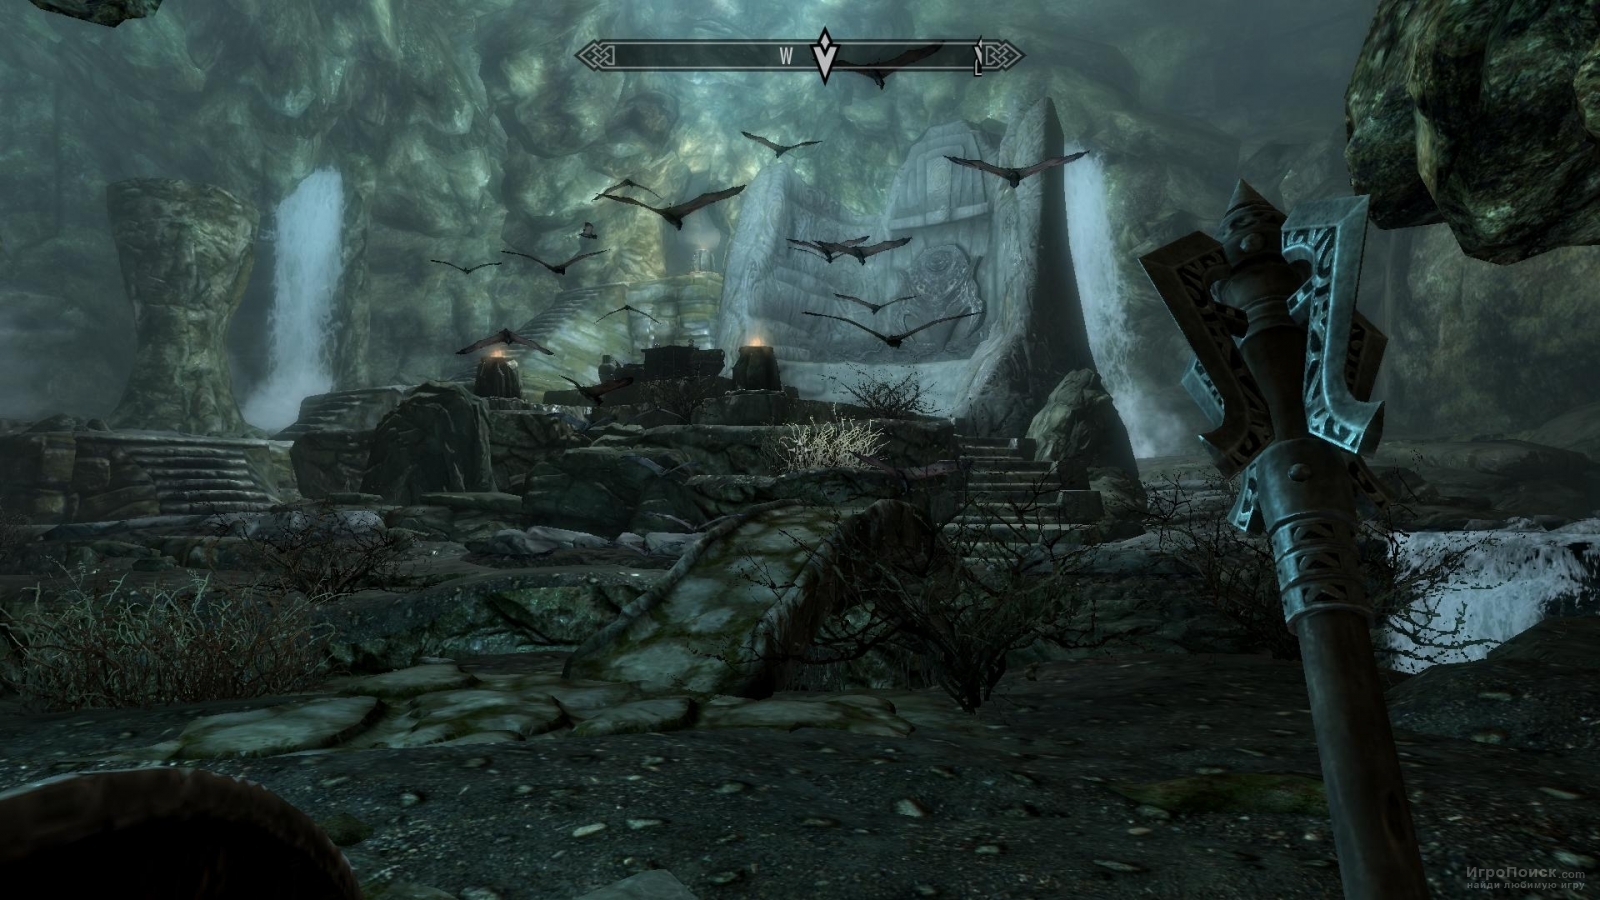 Скриншот к игре The Elder Scrolls V: Skyrim